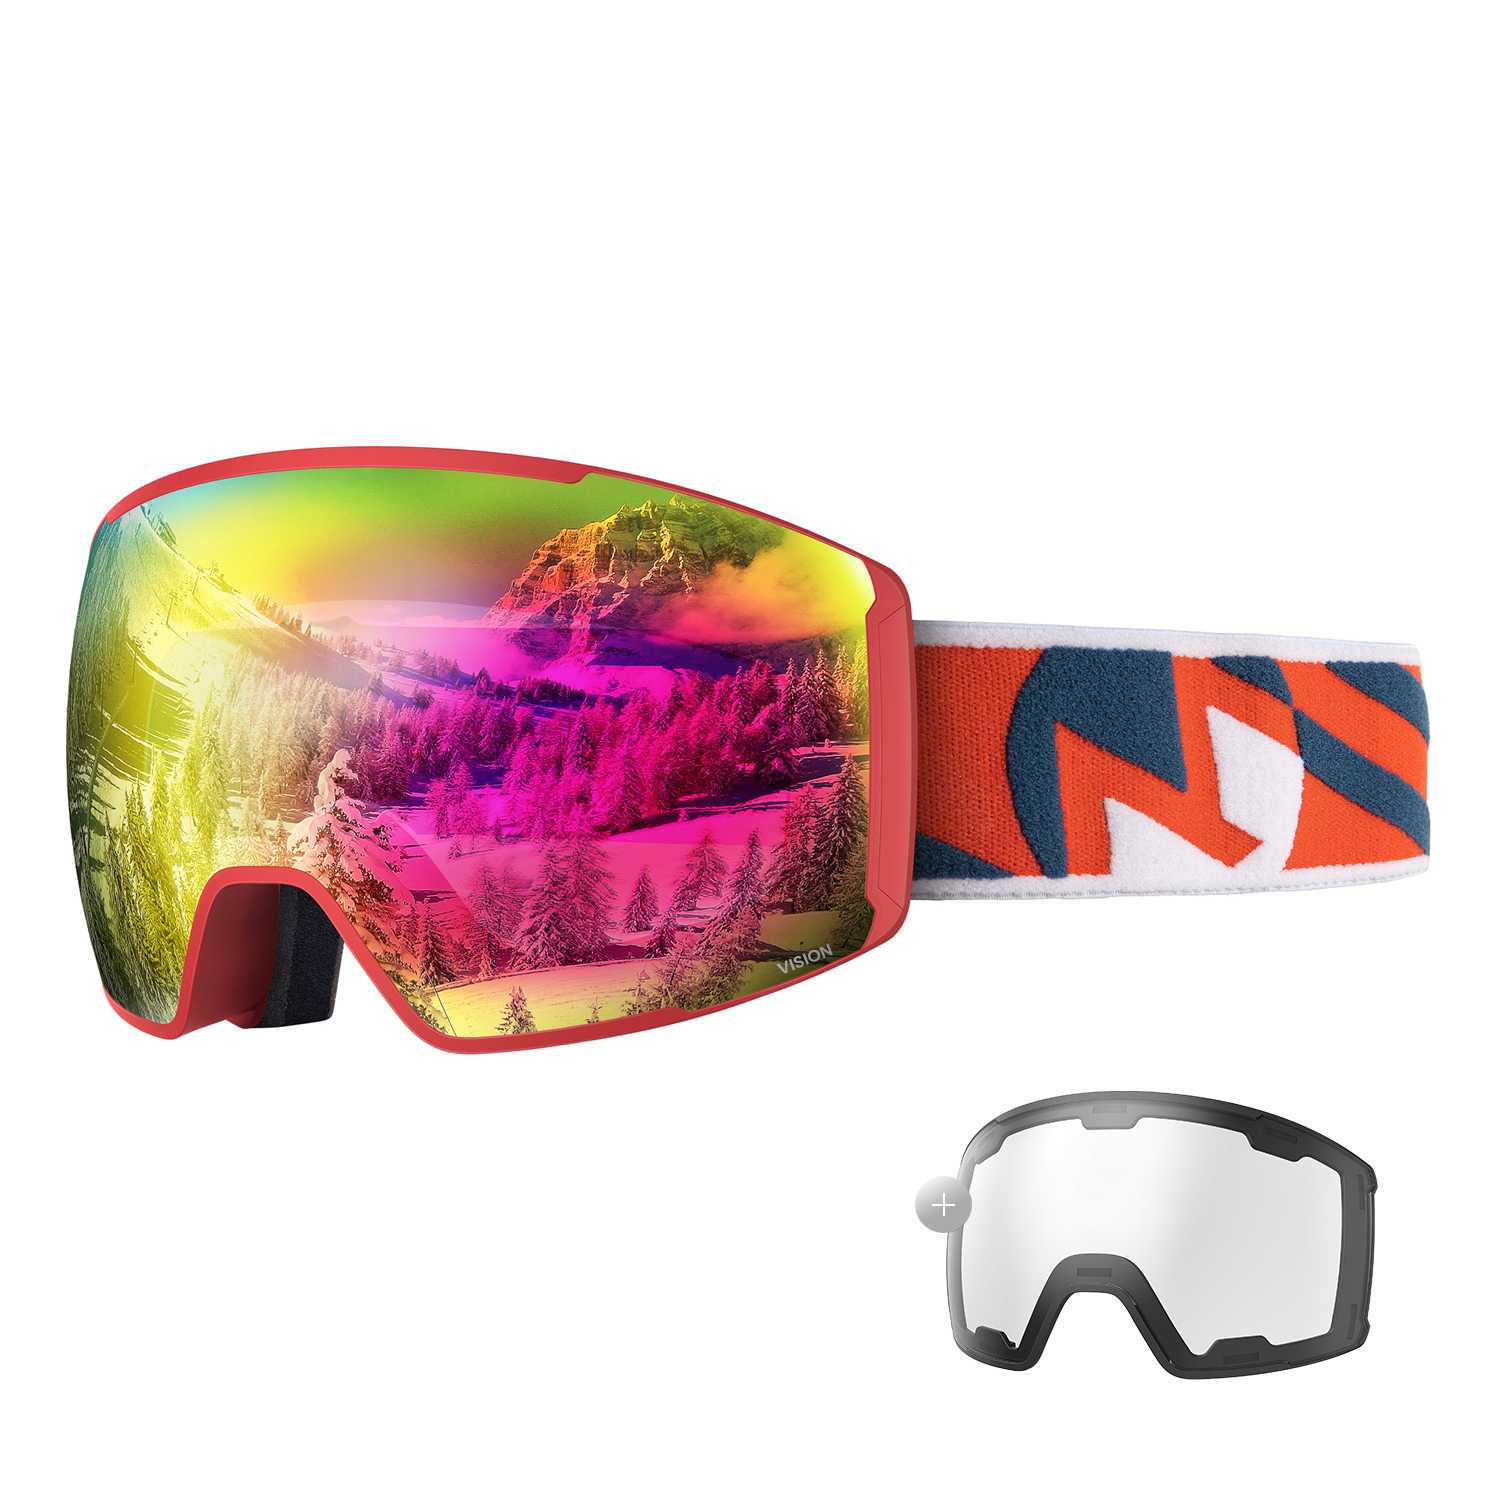 ski goggles for bright conditions